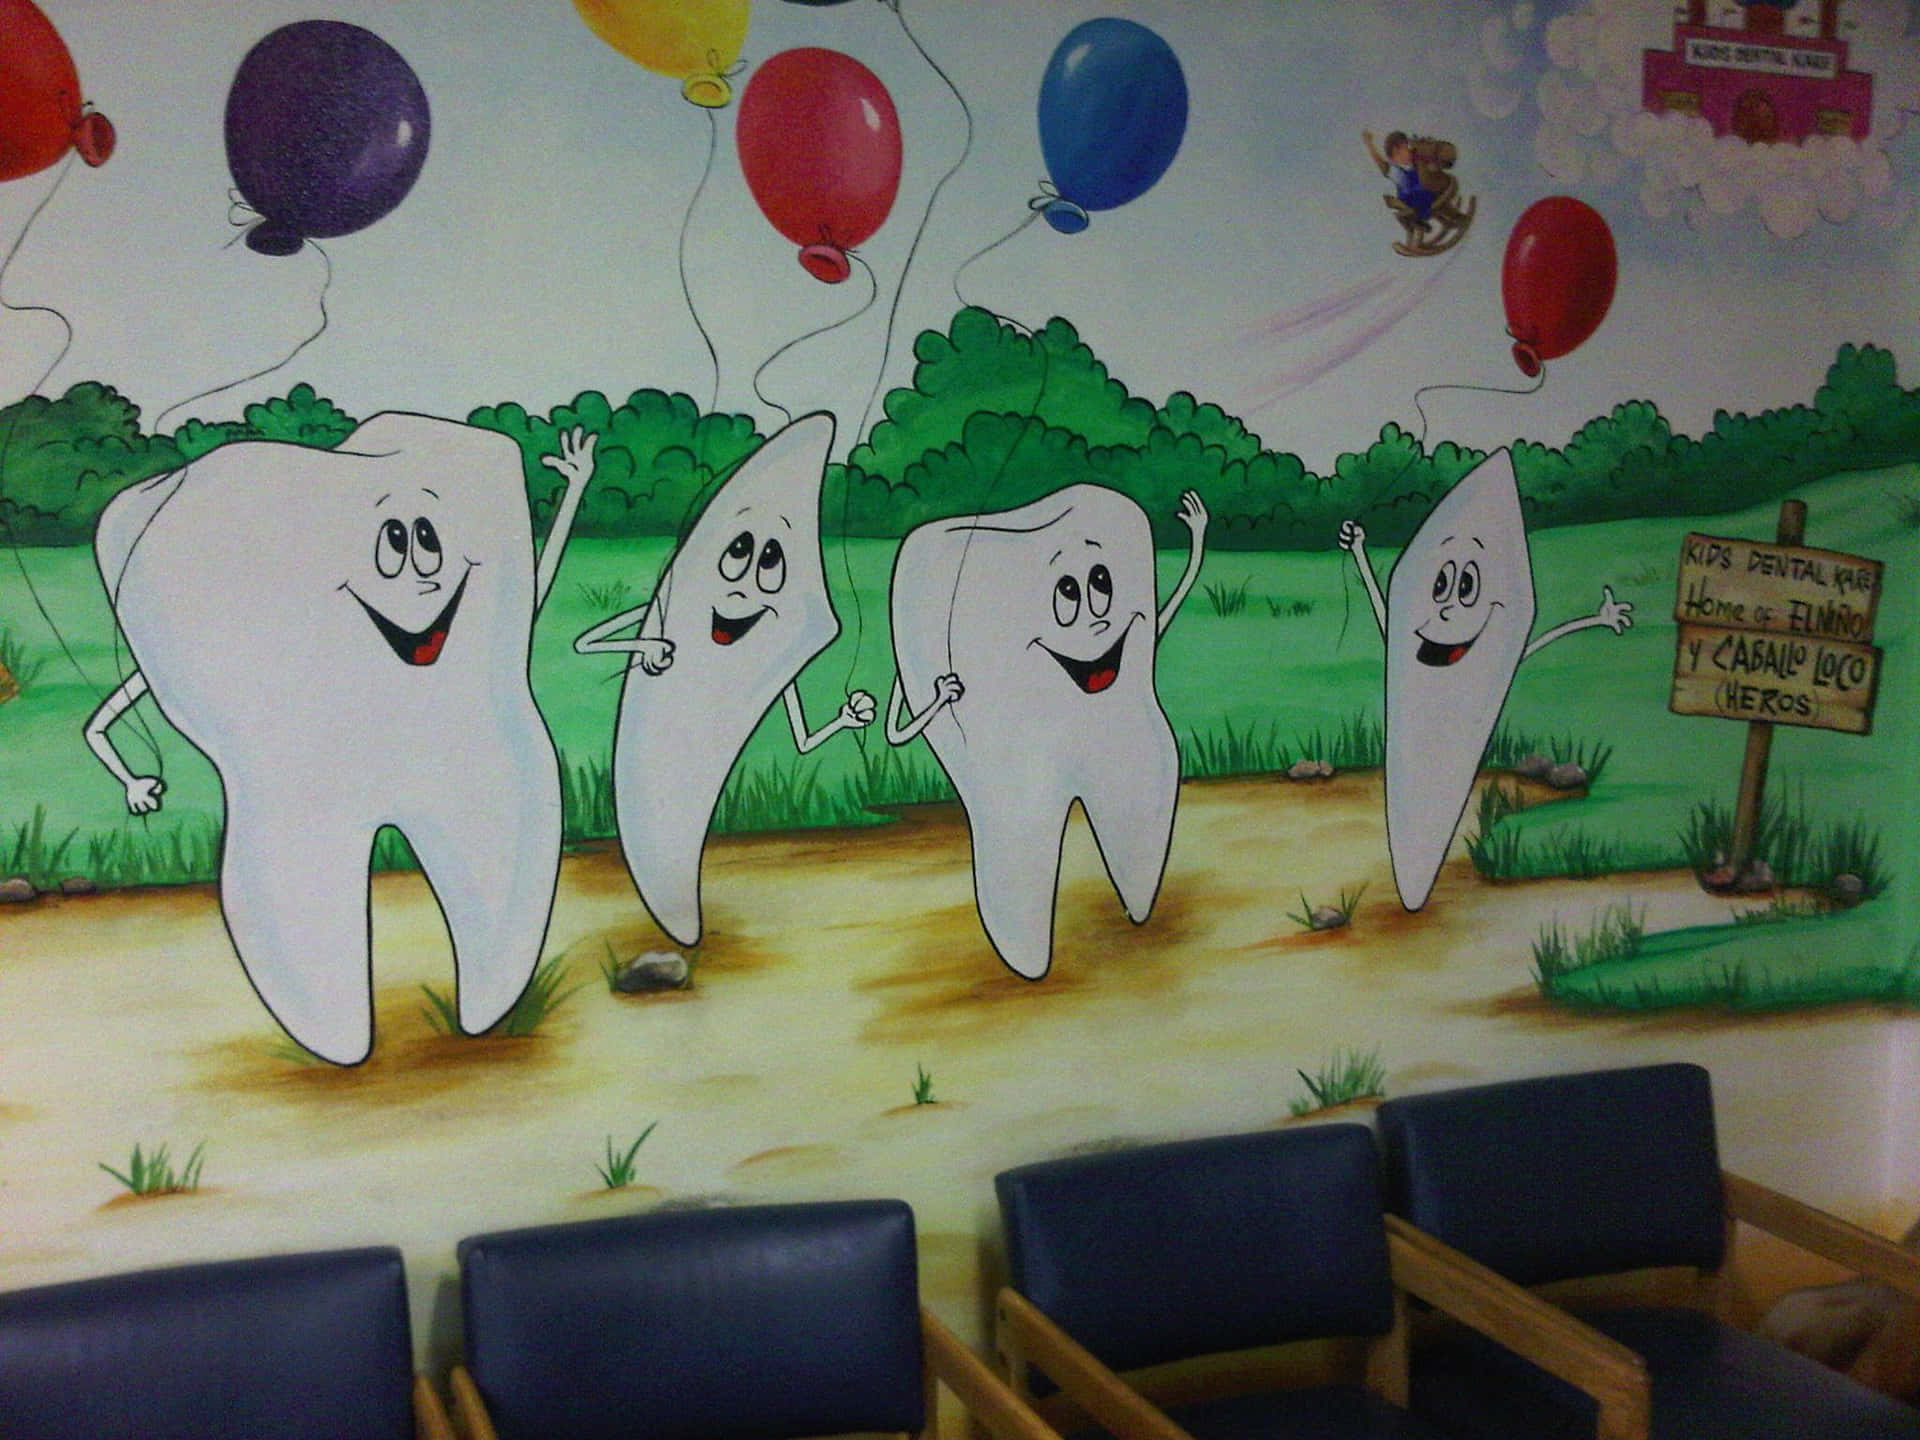 Smiling dentist holding dental equipment in a modern dental office